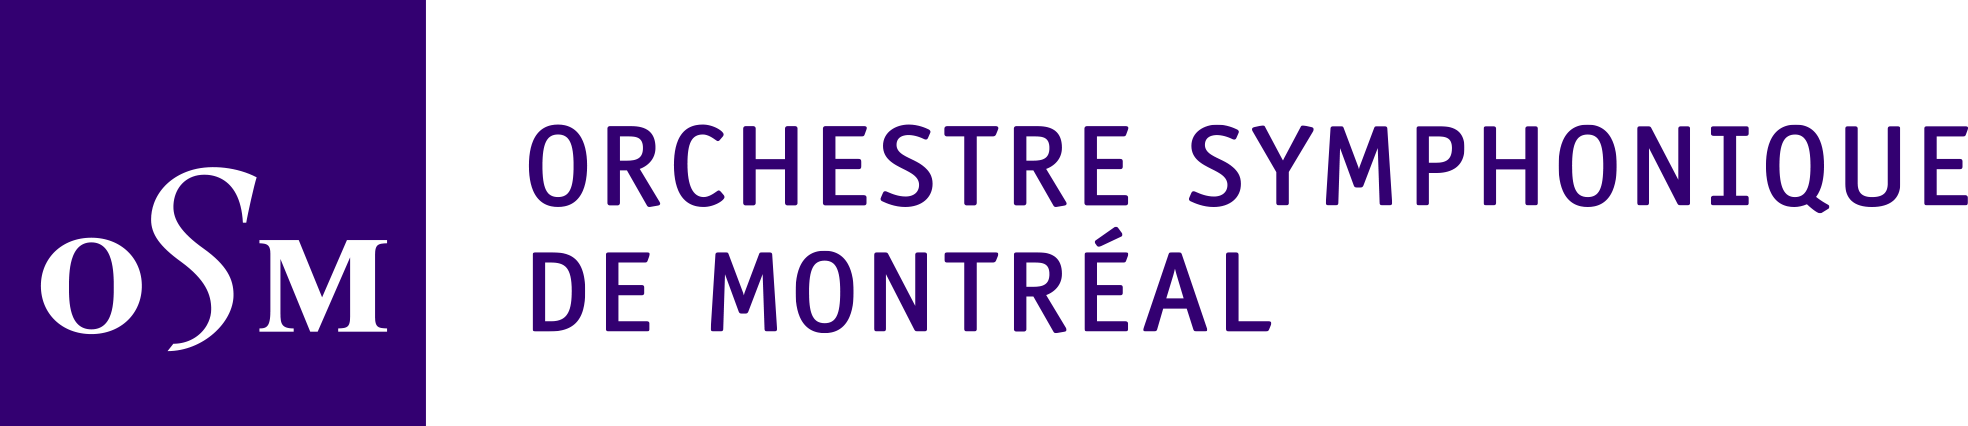 Orchestre symphonique de Montréal (OSM)